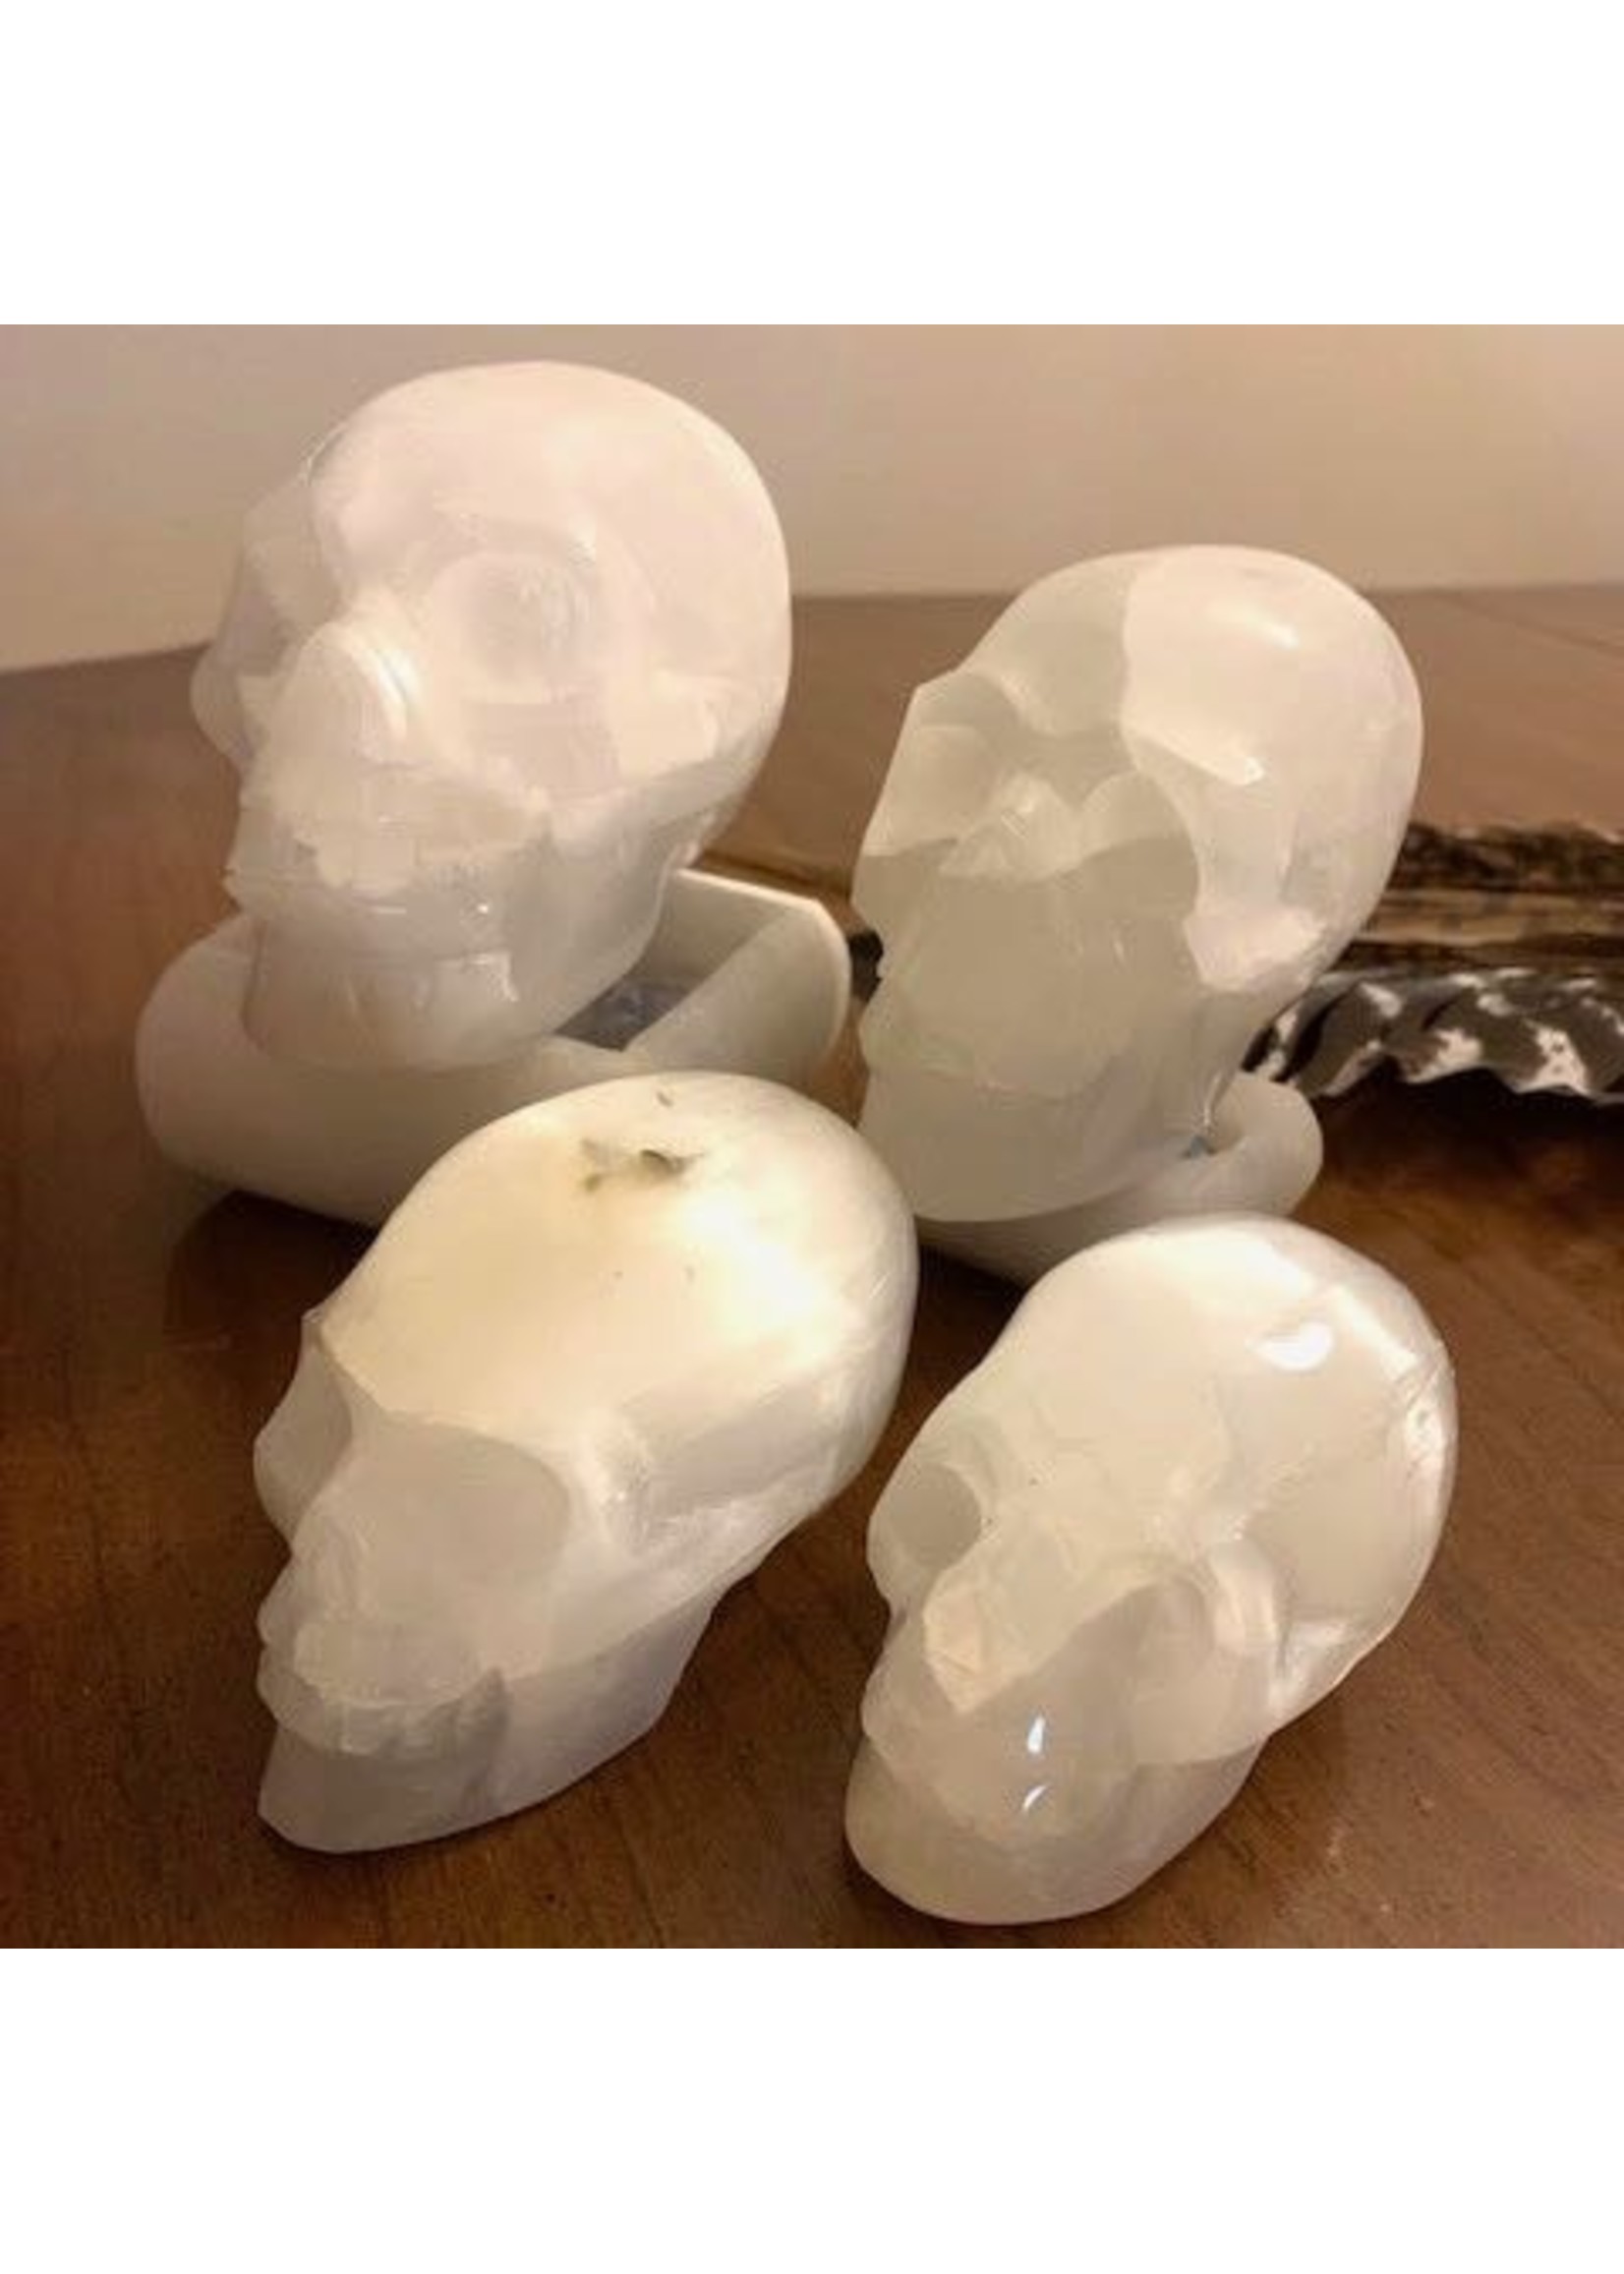 Selenite Skulls for channeling light